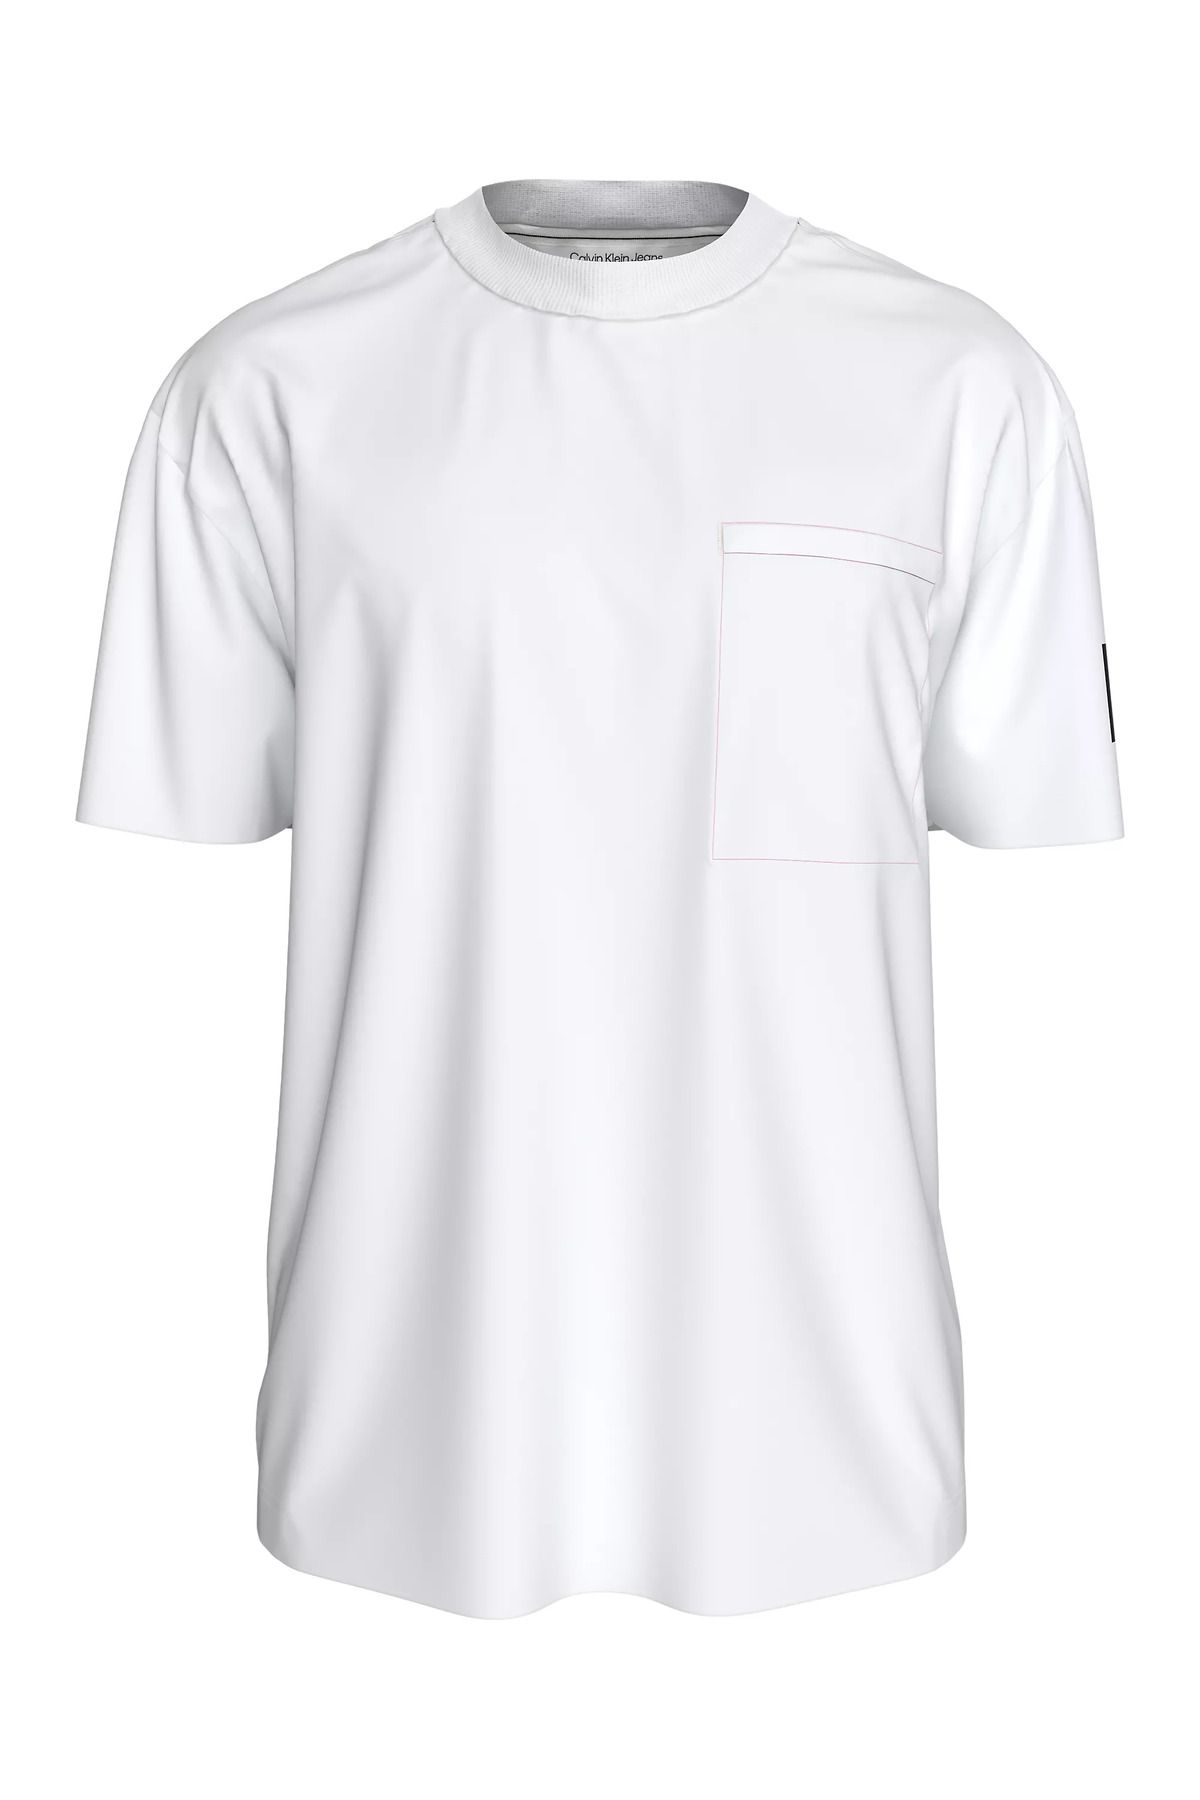 Calvin Klein Erkek Pamuklu Kısa Kollu Yuvarlak Yaka Beyaz T-Shirt J30J325215-YAF